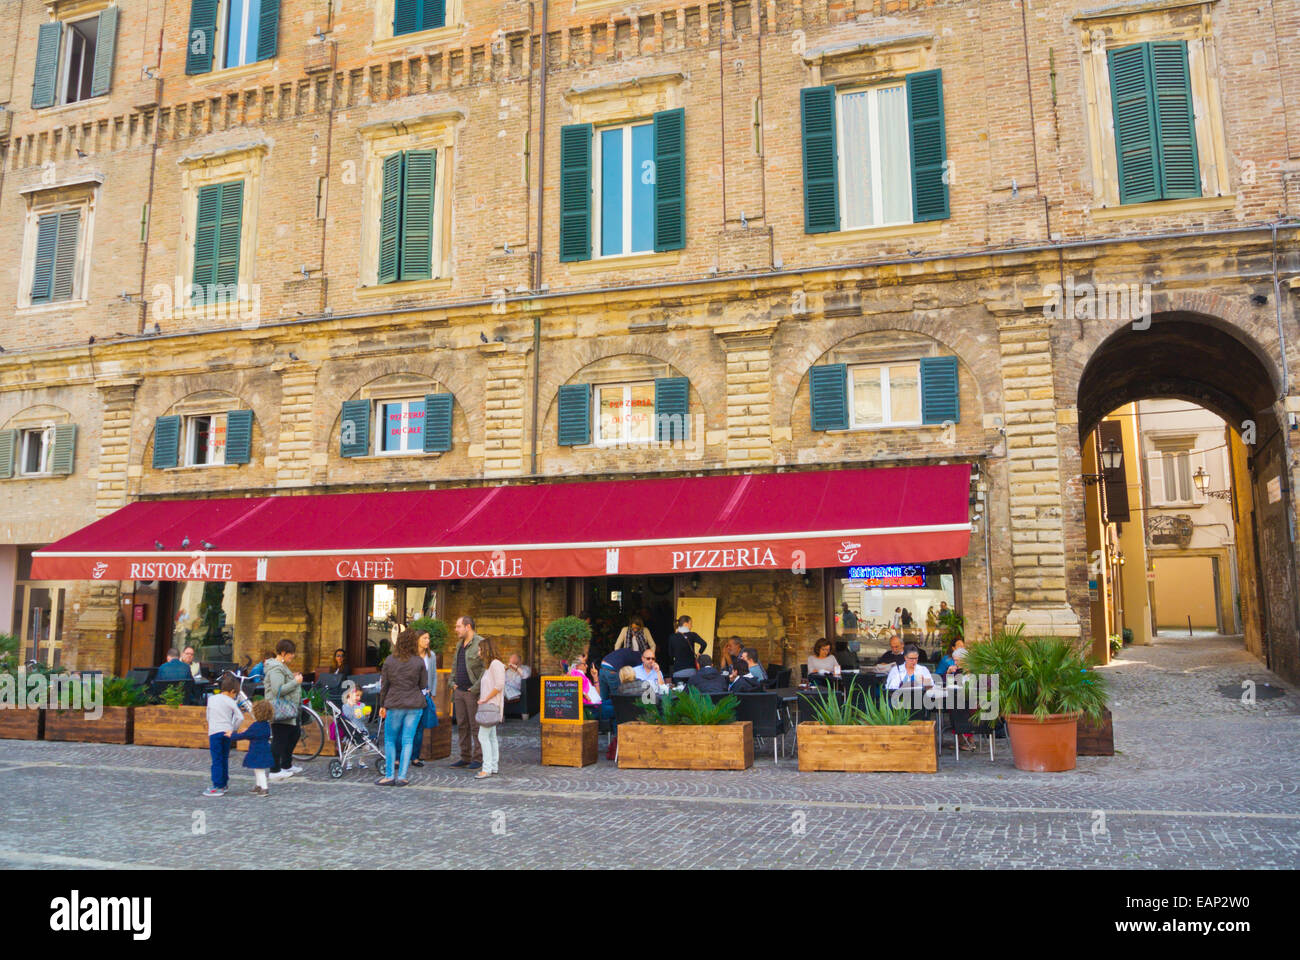 Caffe Ducale, Piazza del Popolo, centro storico, Pesaro, Marche region, Italy Stock Photo